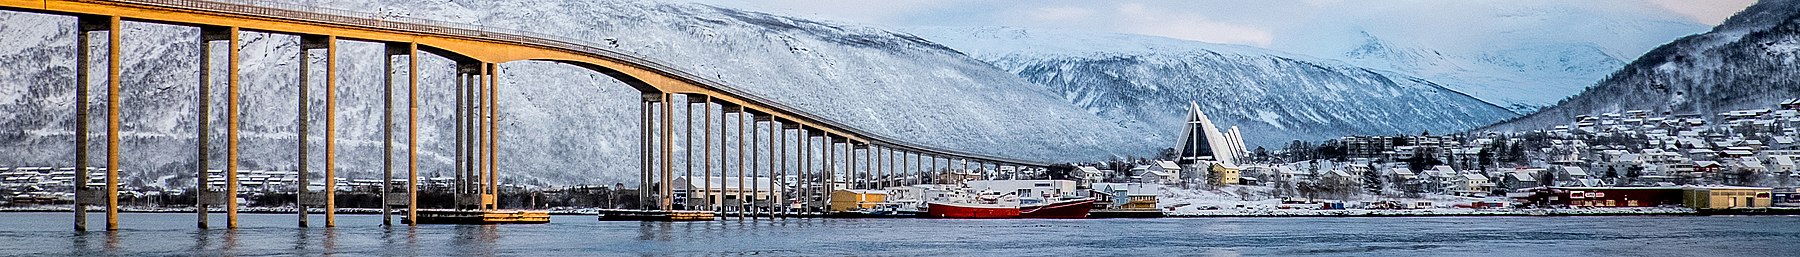 Tromso-banner4.jpg